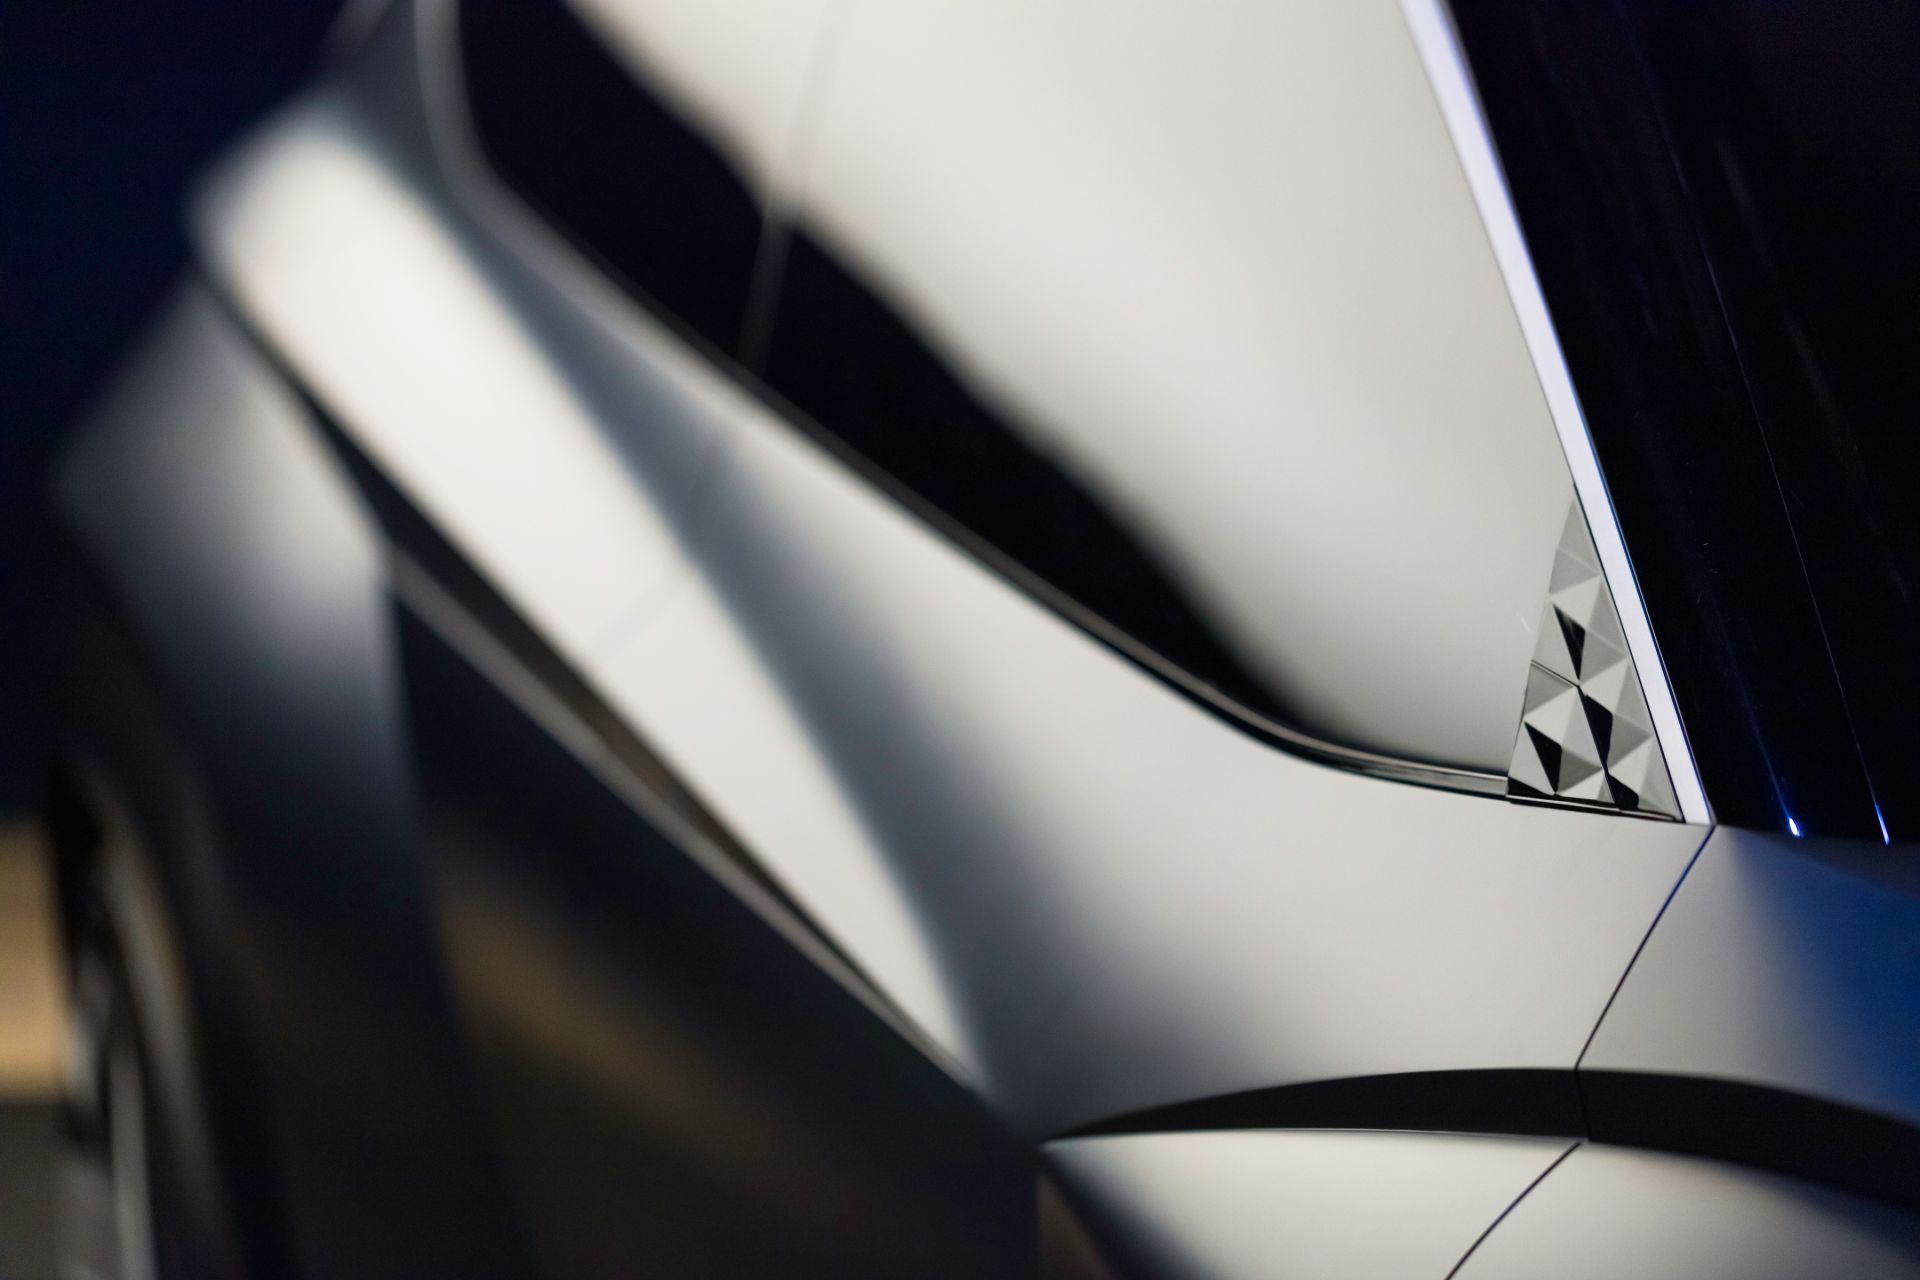 Hyundai Design Boss Presents Striking Vision T Concept In Walkaround ...